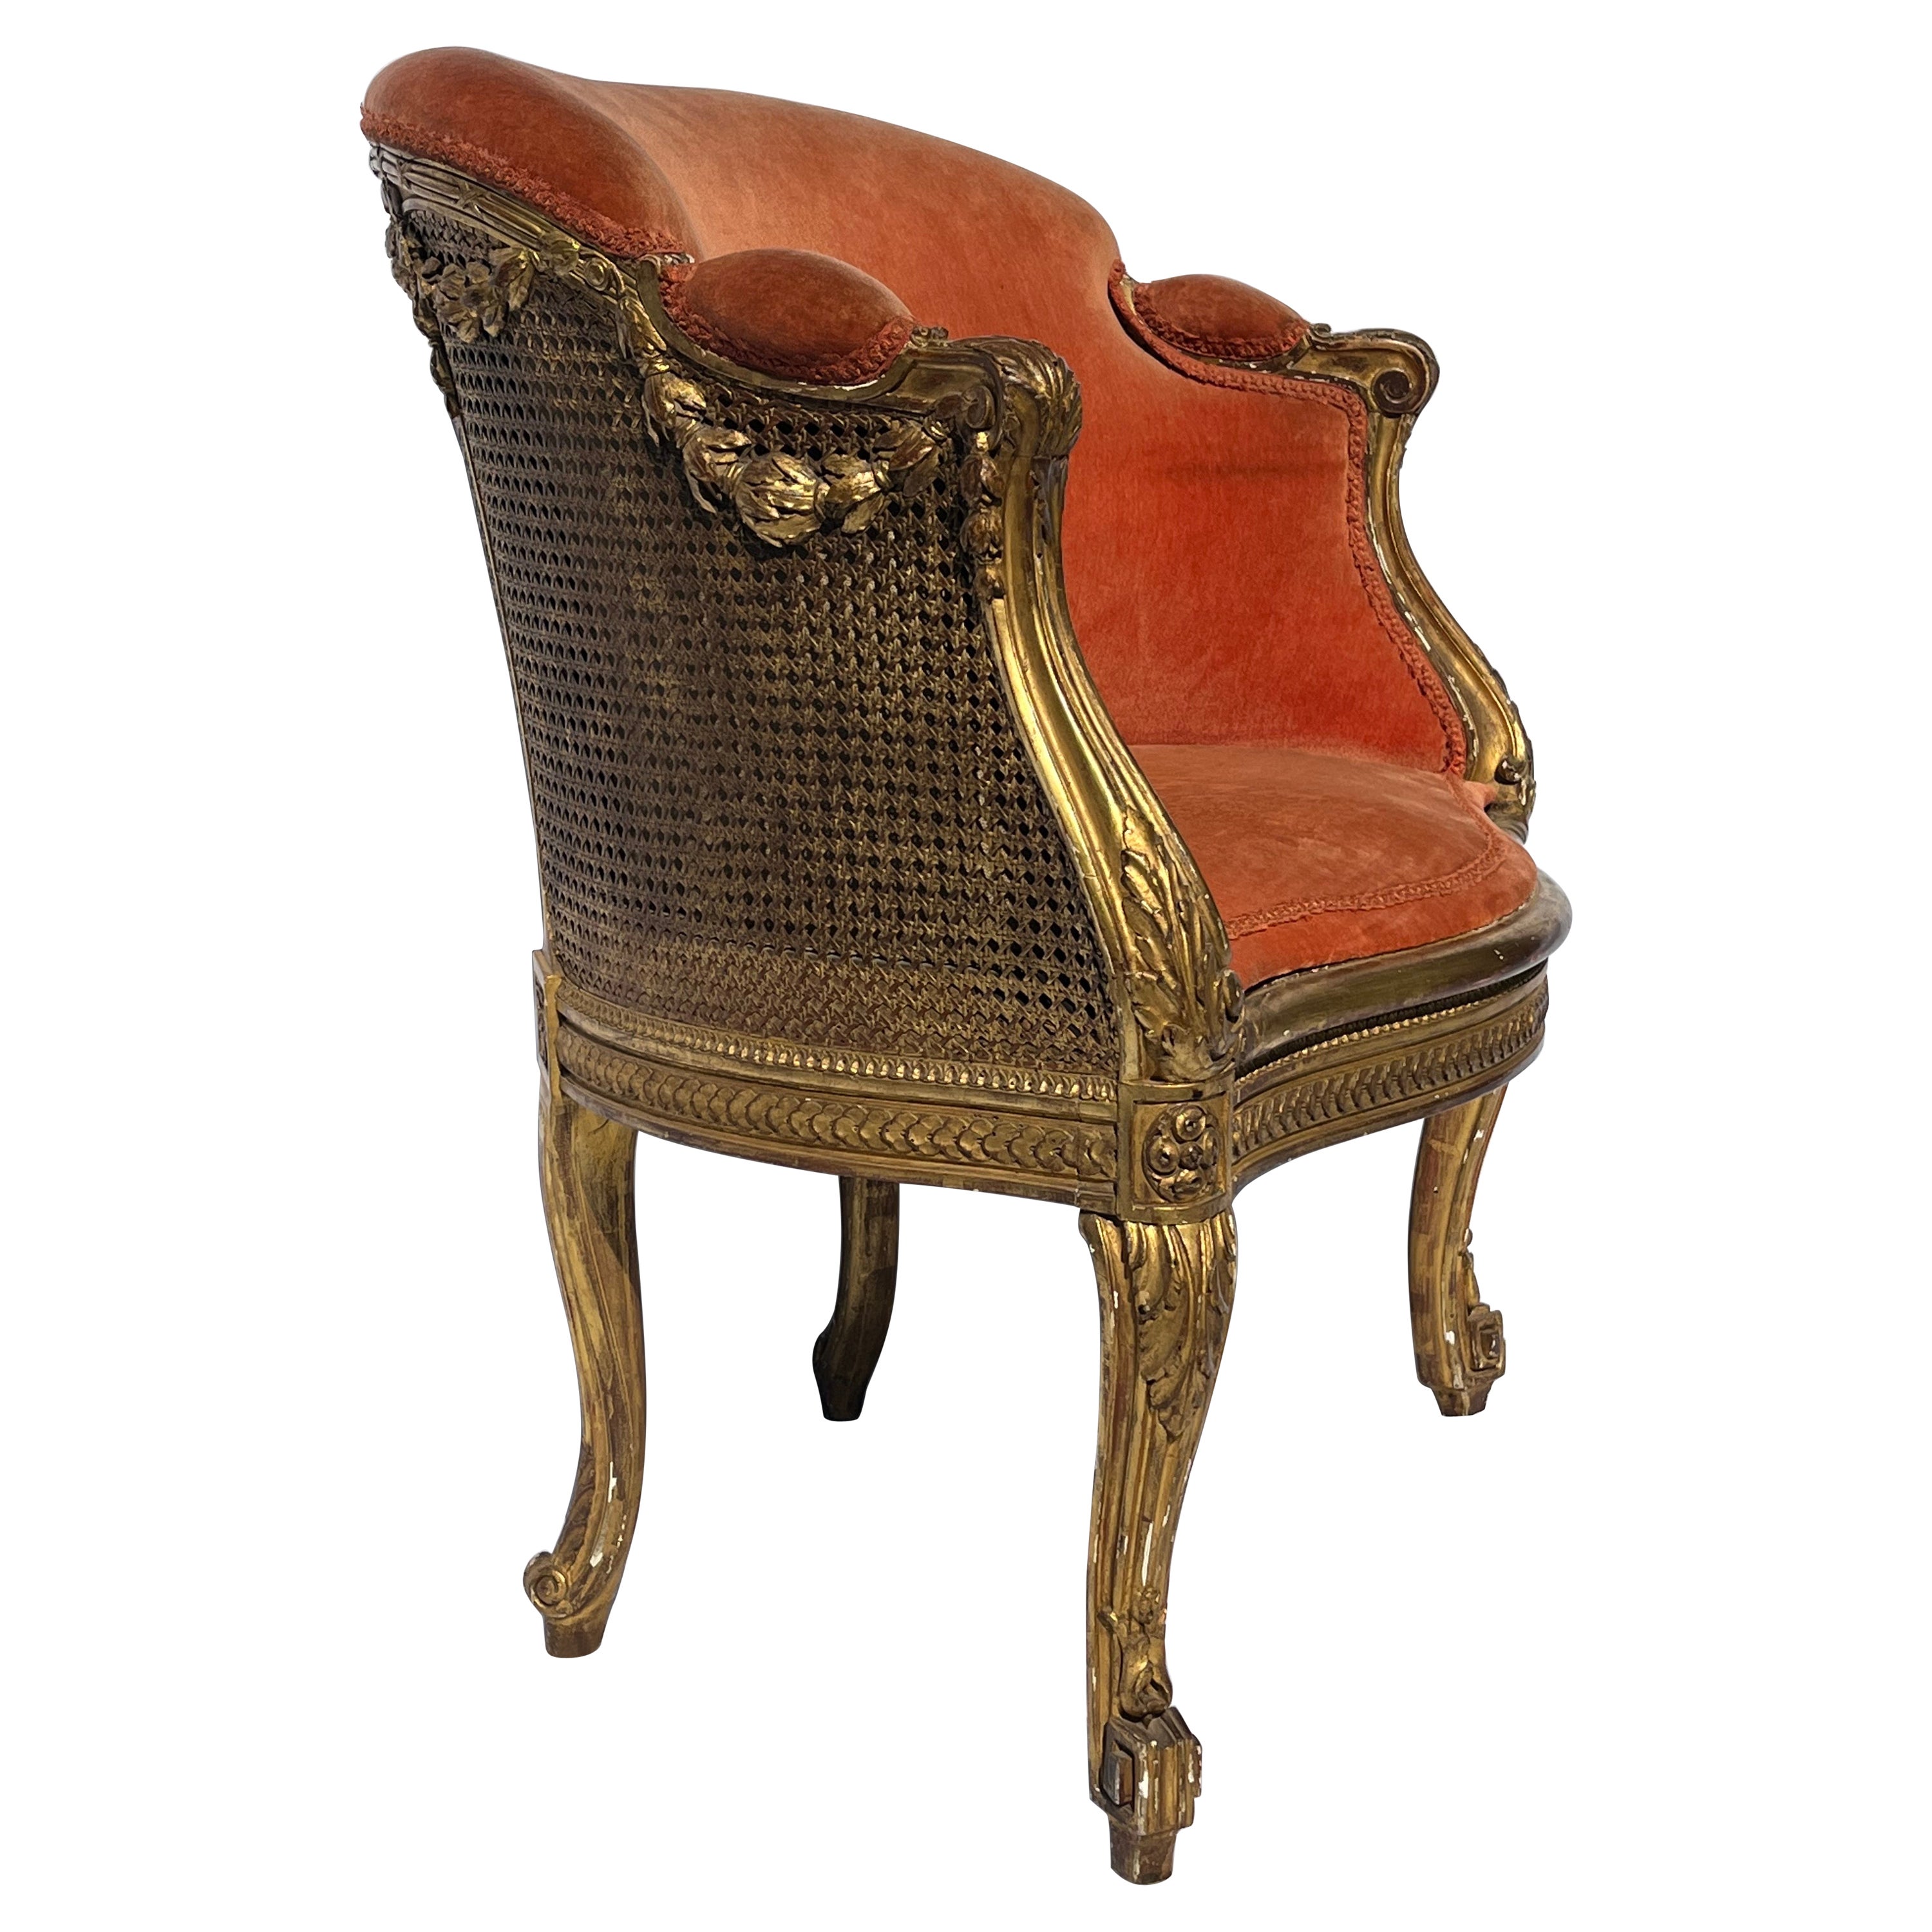 Antiquité française dorée et sculptée 19ème siècle Cane fauteuil Bergere tapissé en vente